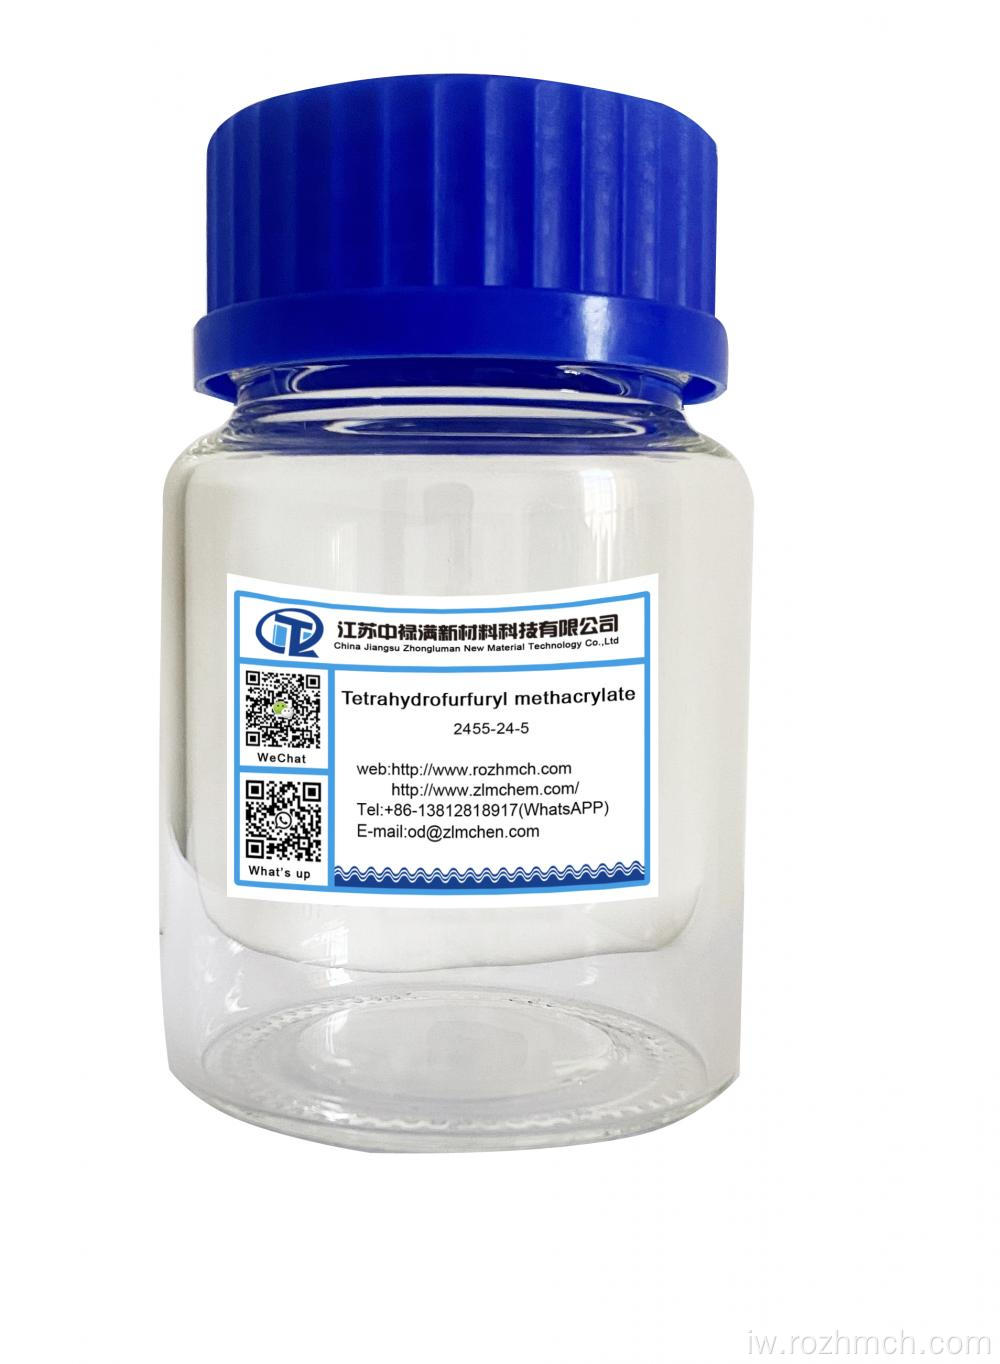 Tetrahydrofurfuryl methacrylate thfma 2455-24-5